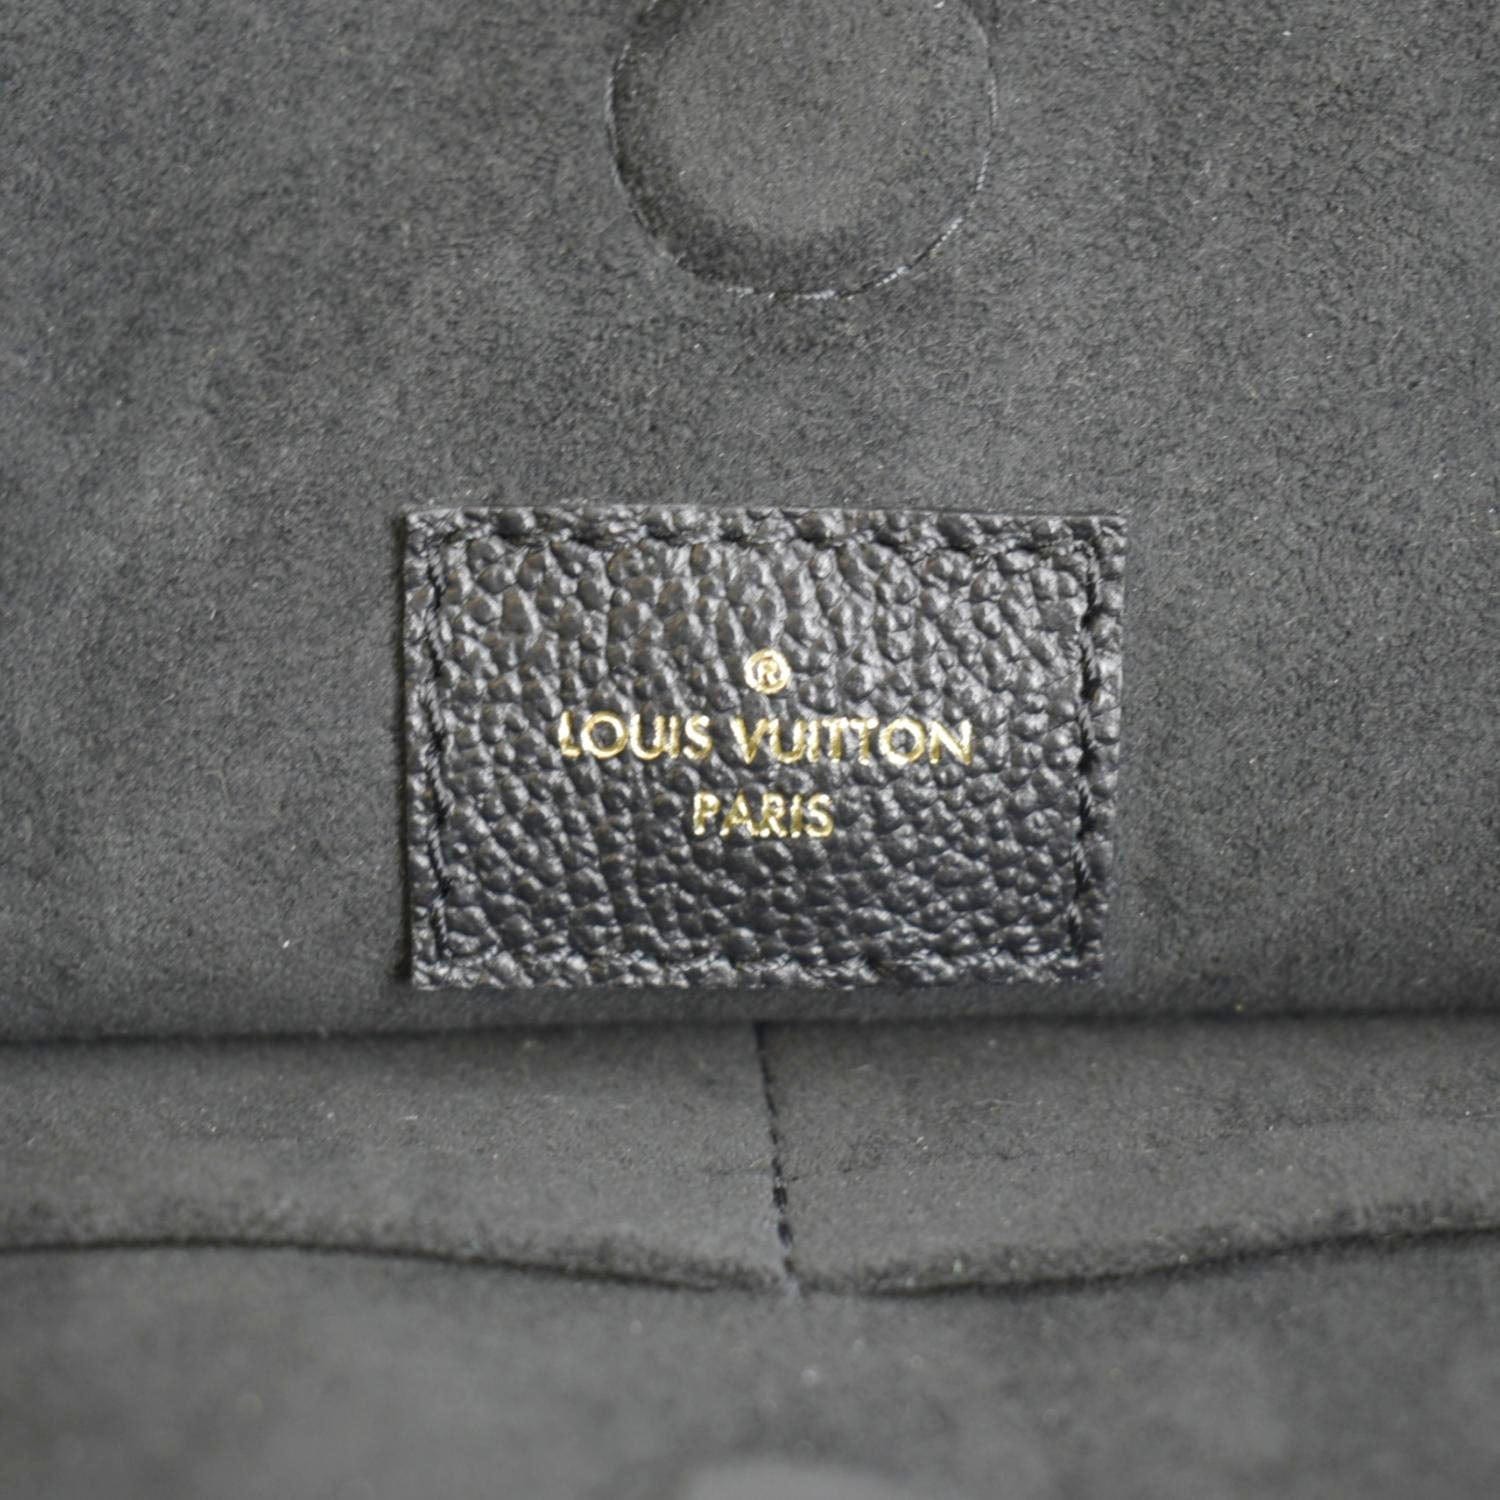 Classic Vintage Louis Vuitton Vendome Handbag Purse For Sale at